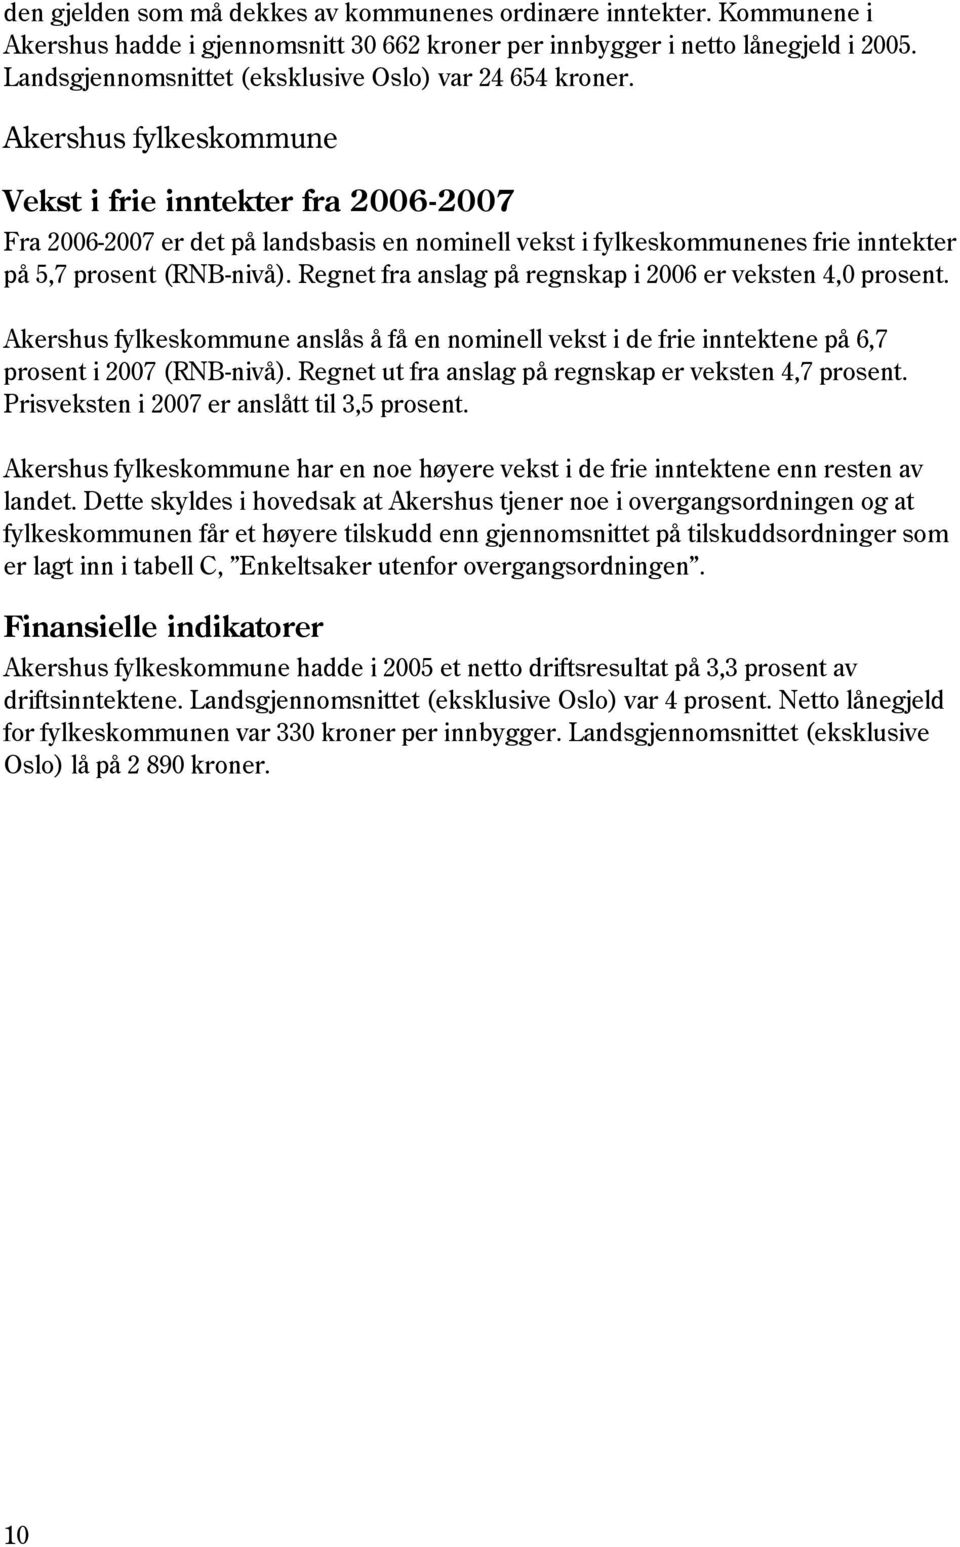 Akershus fylkeskommune Vekst i frie inntekter fra 2006-2007 Fra 2006-2007 er det på landsbasis en nominell vekst i fylkeskommunenes frie inntekter på 5,7 prosent (RNB-nivå).